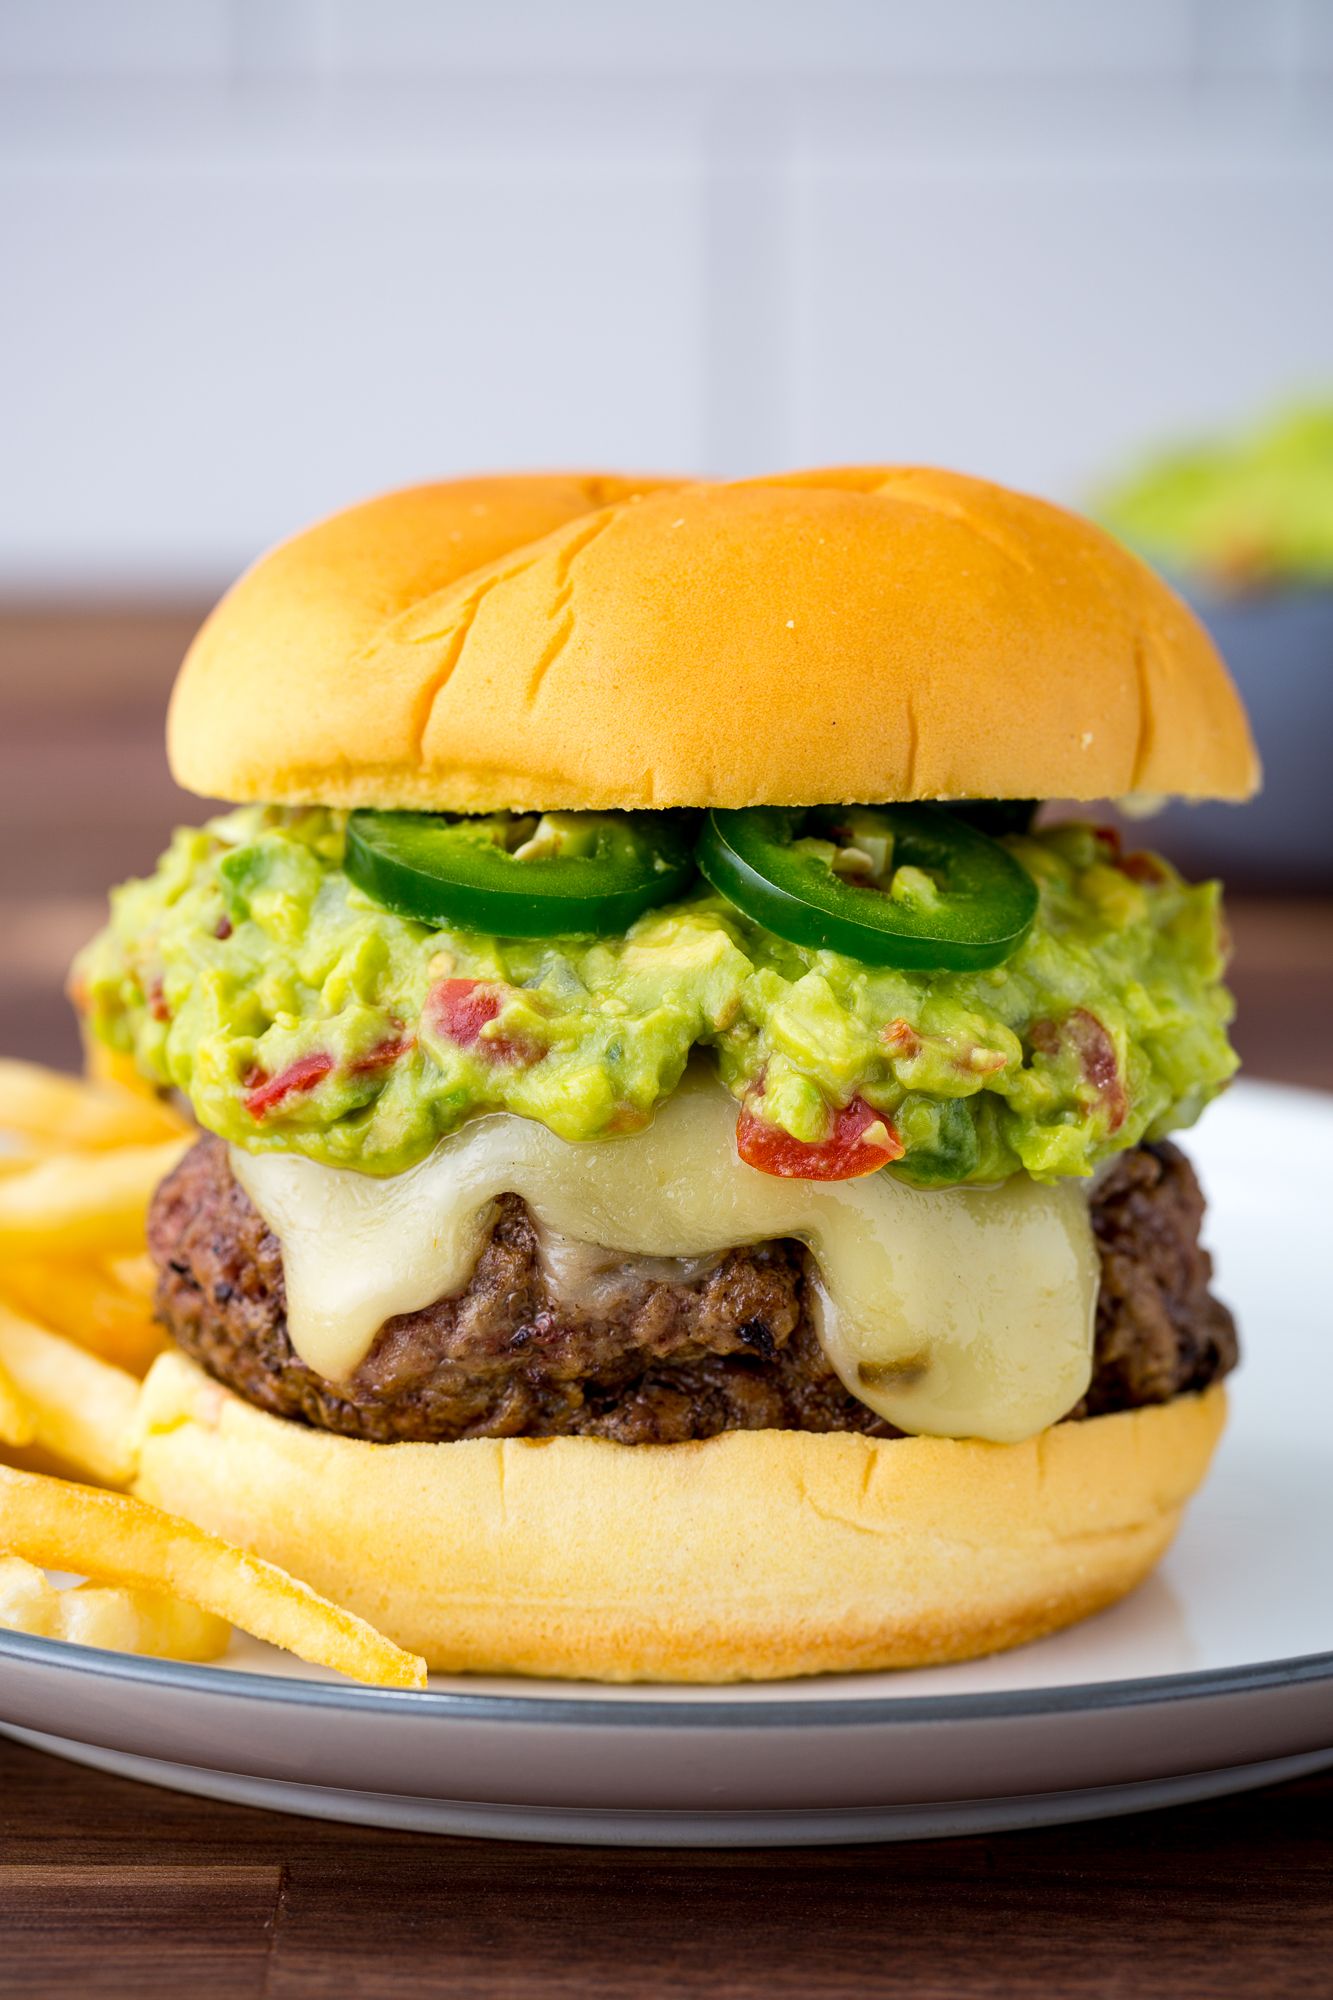 Overtekenen Met bloed bevlekt Ademen 60+ Best Burger Recipes - Easy Hamburger Ideas